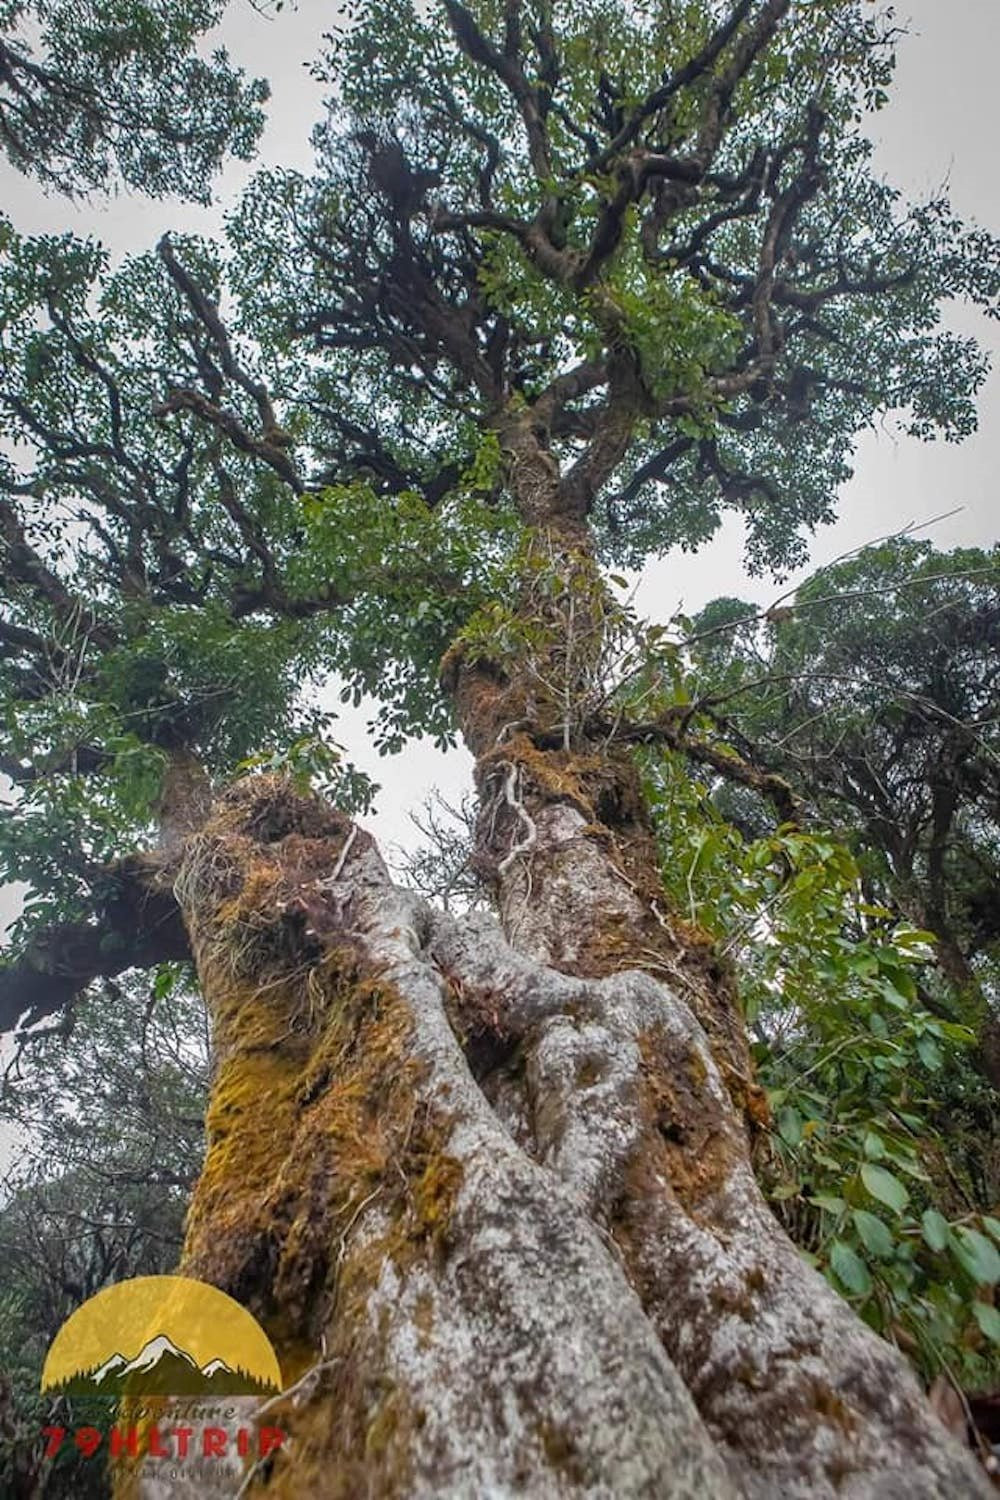 Nhiều người nhận xét, nhìn cánh rừng Tà Xùa như thể quay lại thời kỳ khủng long cách đây hàng triệu năm với khung cảnh huyền bí, lạ lùng...